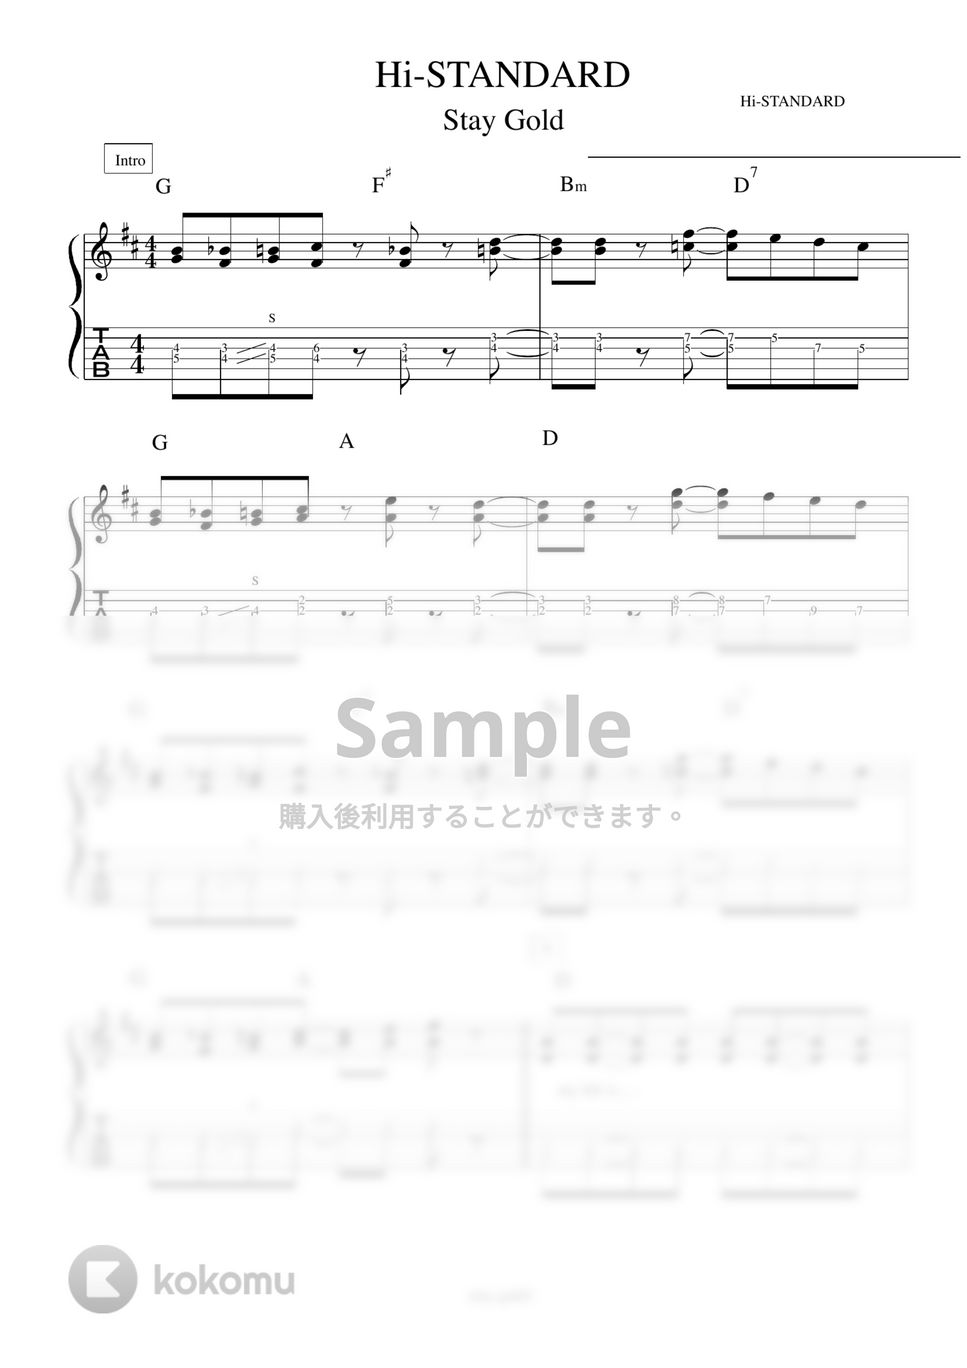 Hi-STANDARD - StayGold ギター演奏動画付TAB譜 by バイトーン音楽教室